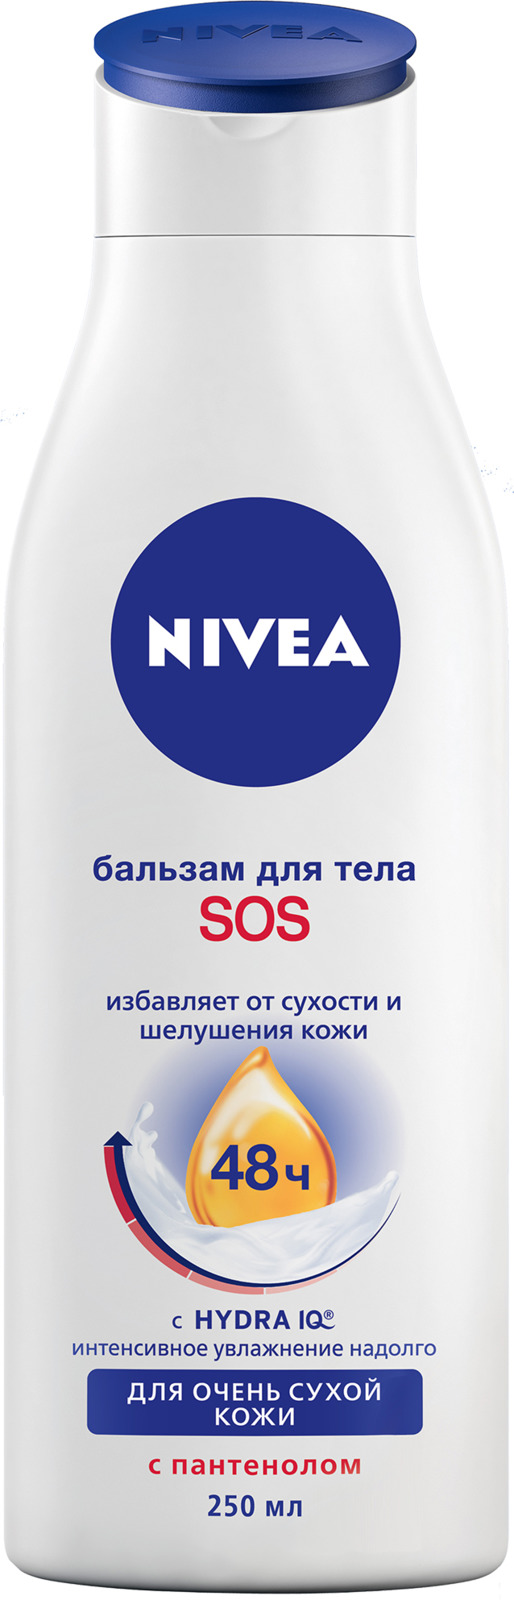 Восстанавливающий SOS-бальзам для тела Nivea, 250 мл